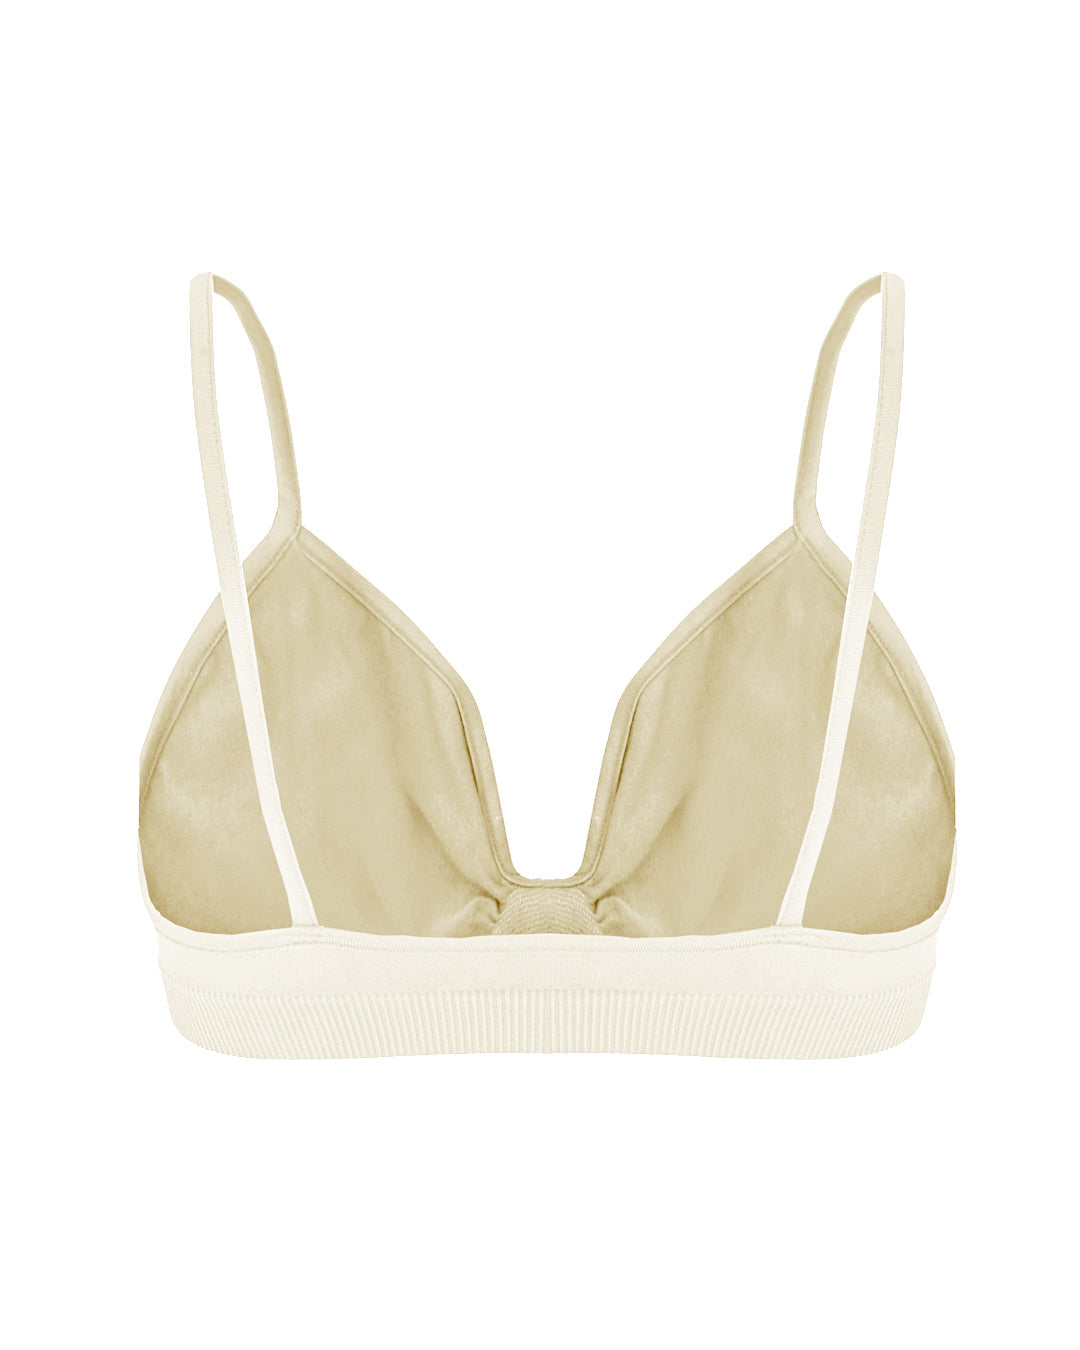 LIBERATED Bikini Bra top | Cream | Image 3